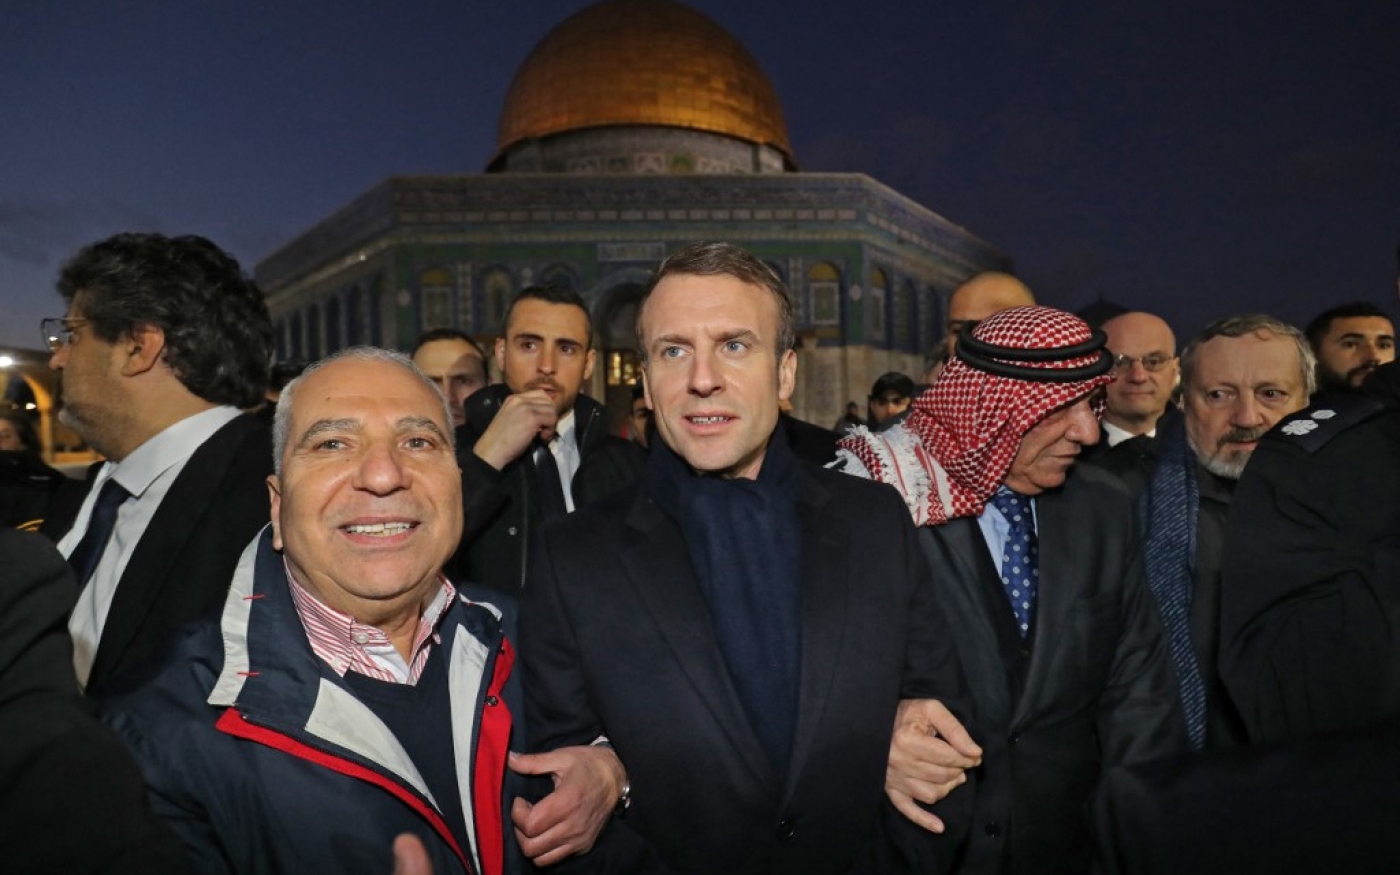 Le président français Emmanuel Macron, s’il est réélu, pourrait bien être tenté de reconnaître Jérusalem comme capitale d’Israël (AFP/Ludovic Marin)